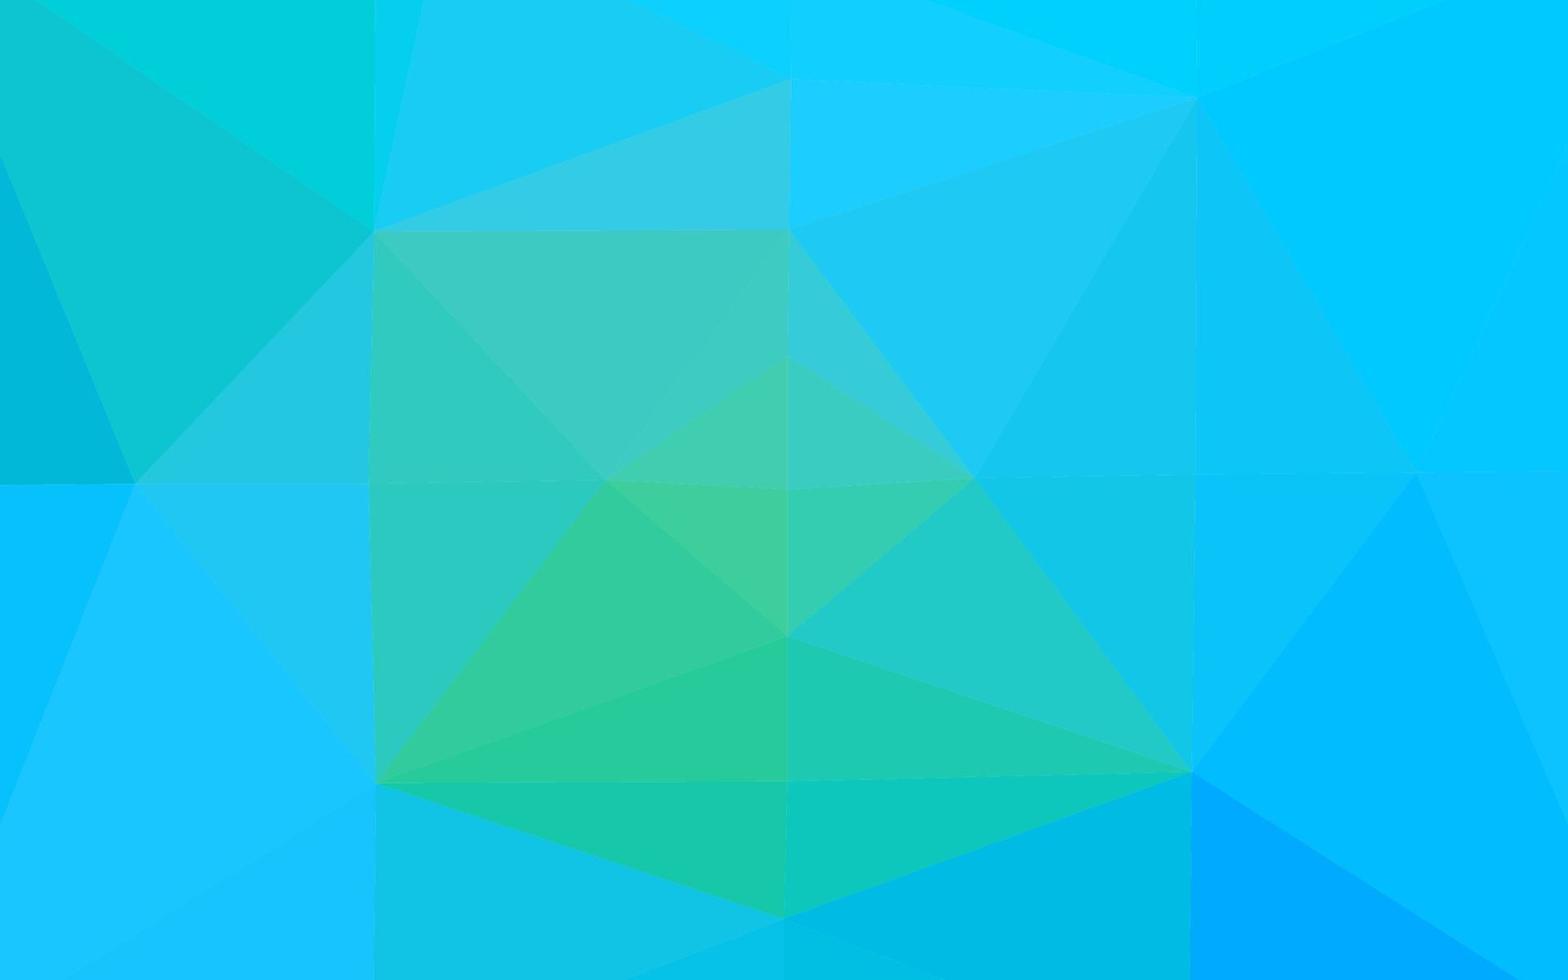 modelo poligonal de vetor azul e verde claro.